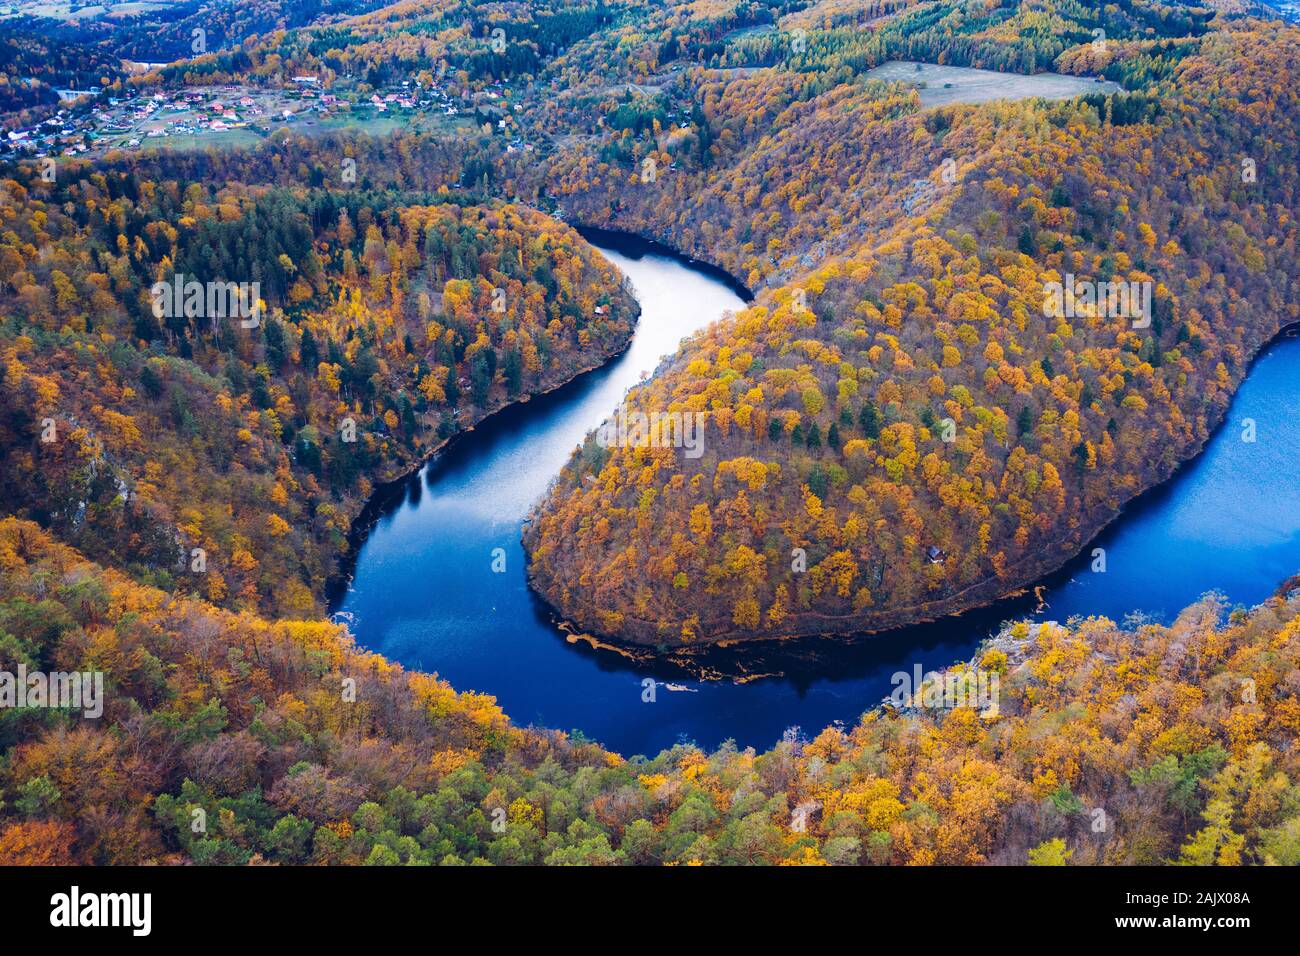 Schöne Vyhlidka Maj, Lookout Maj, in der Nähe von Teletin, Tschechische Republik. Die Mäander des Flusses Moldau von bunten Herbst Wald umgeben Gesehen von oben. Stockfoto